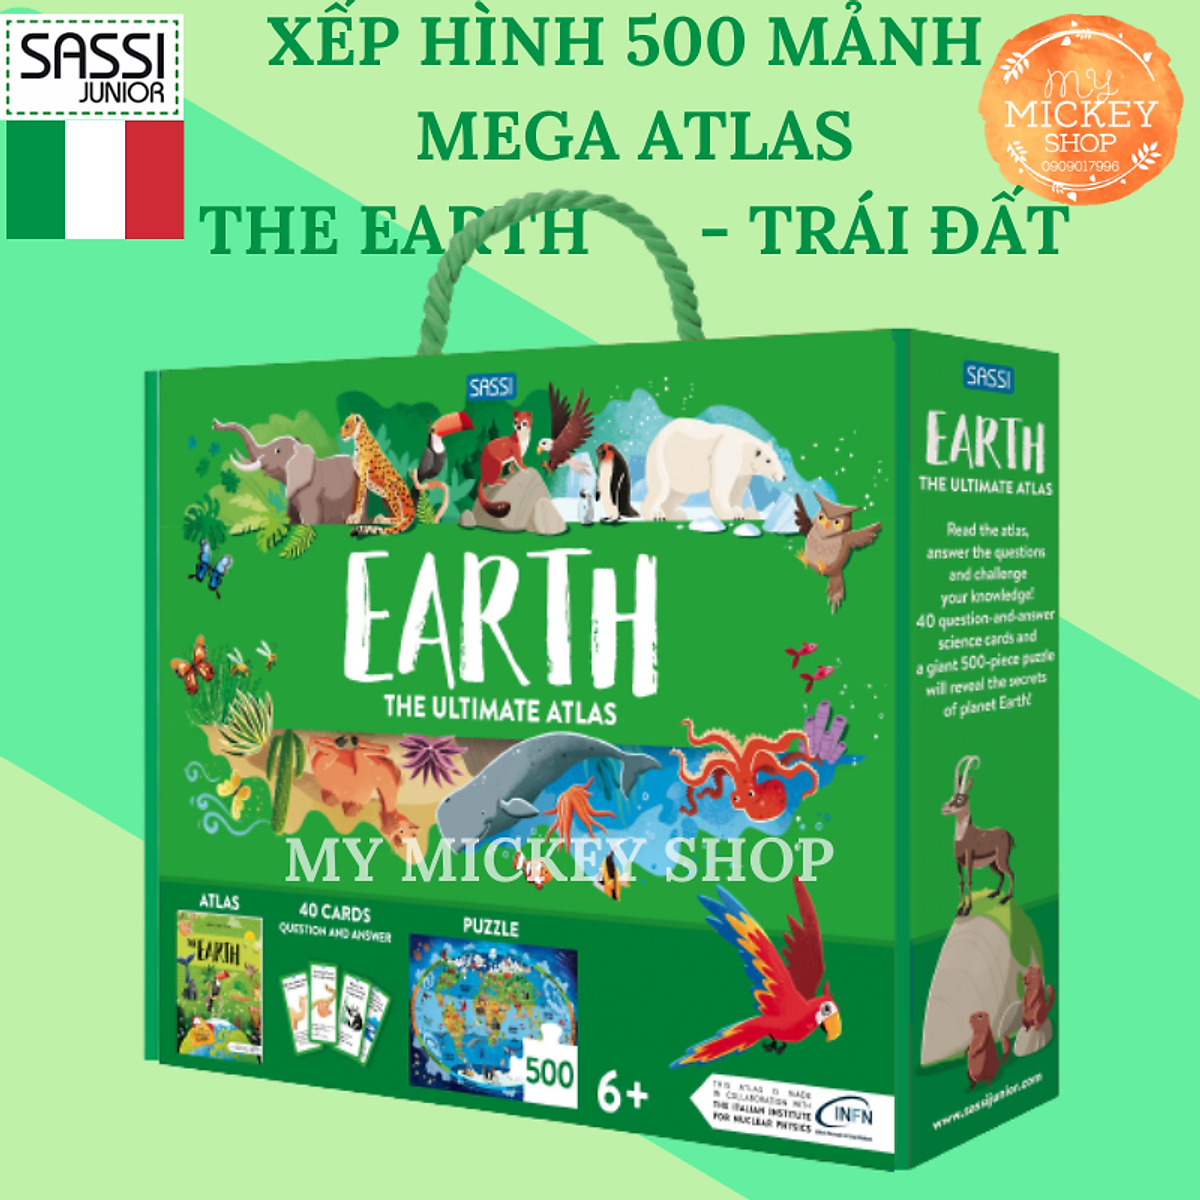 Mua Bộ Trò Chơi Xếp Hình 500 Mảnh Chủ Đề Trái Đất - The Earth Chính Hãng  Sassi Ý Tại My Mickey Shop | Tiki